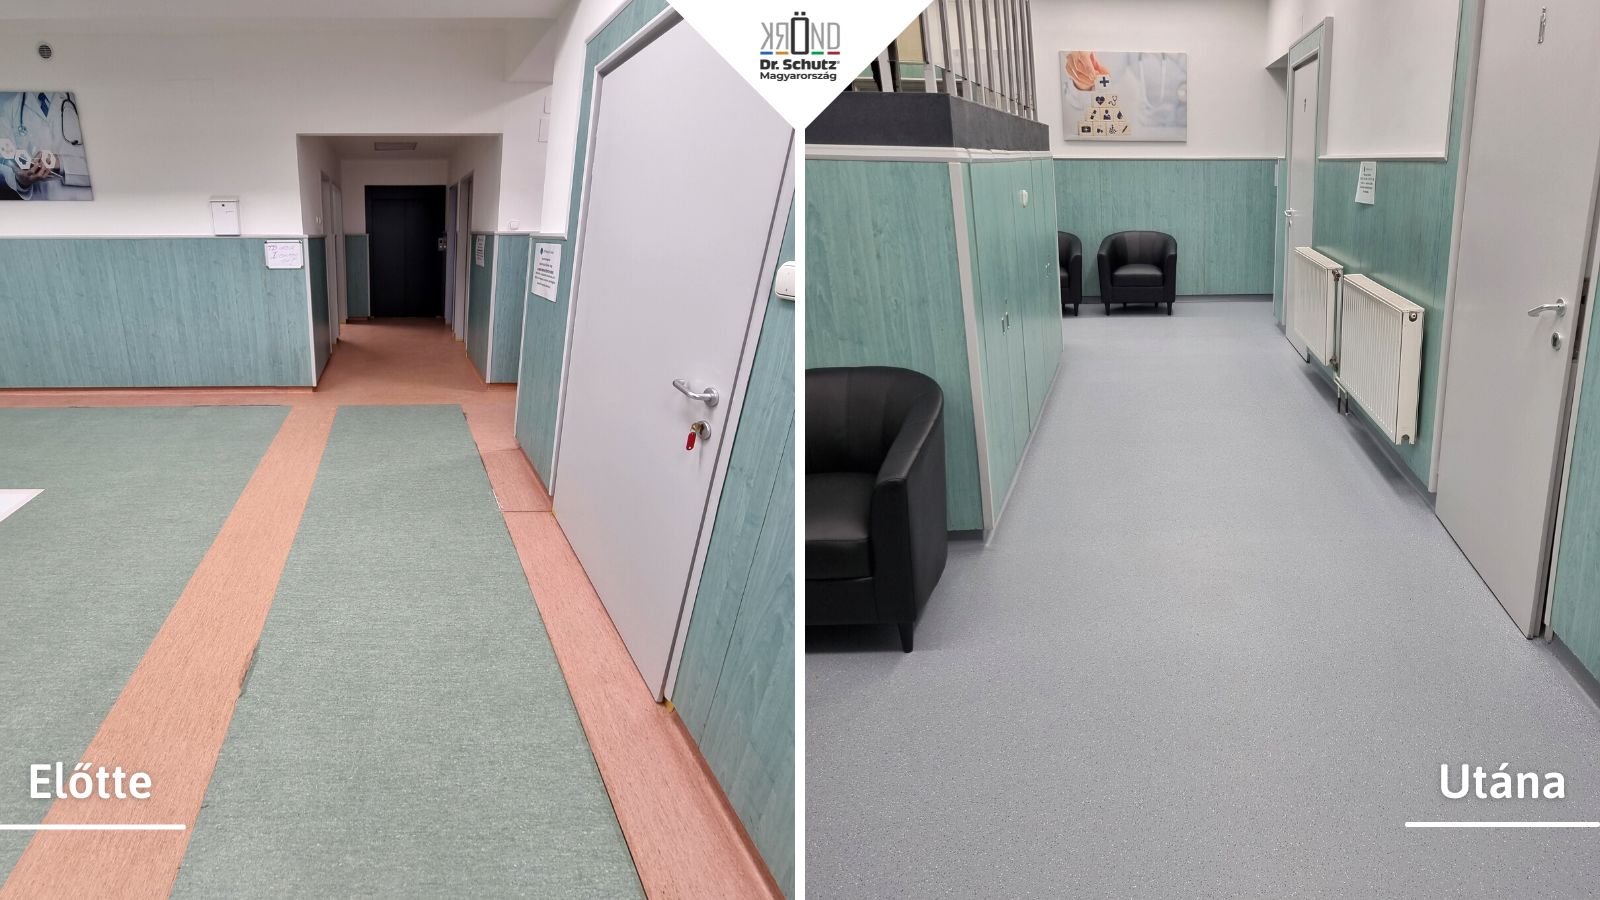 Budapesti klinika pvc padlója padlómentés előtt és után.